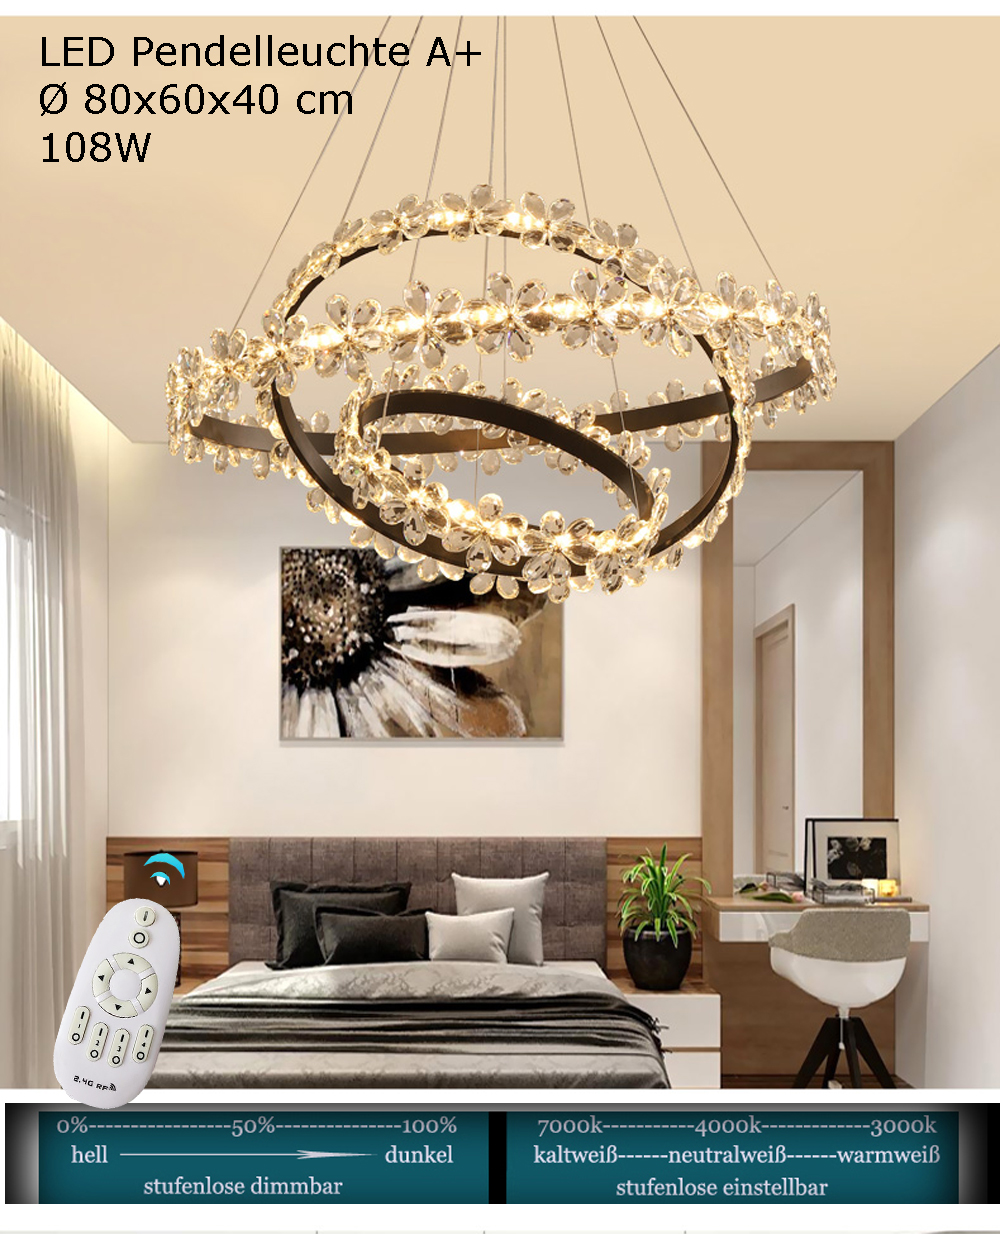 Pendelleuchte mit Fernbedienung Luxus LED XW813 helligkeit einstellbar Neu  A | eBay